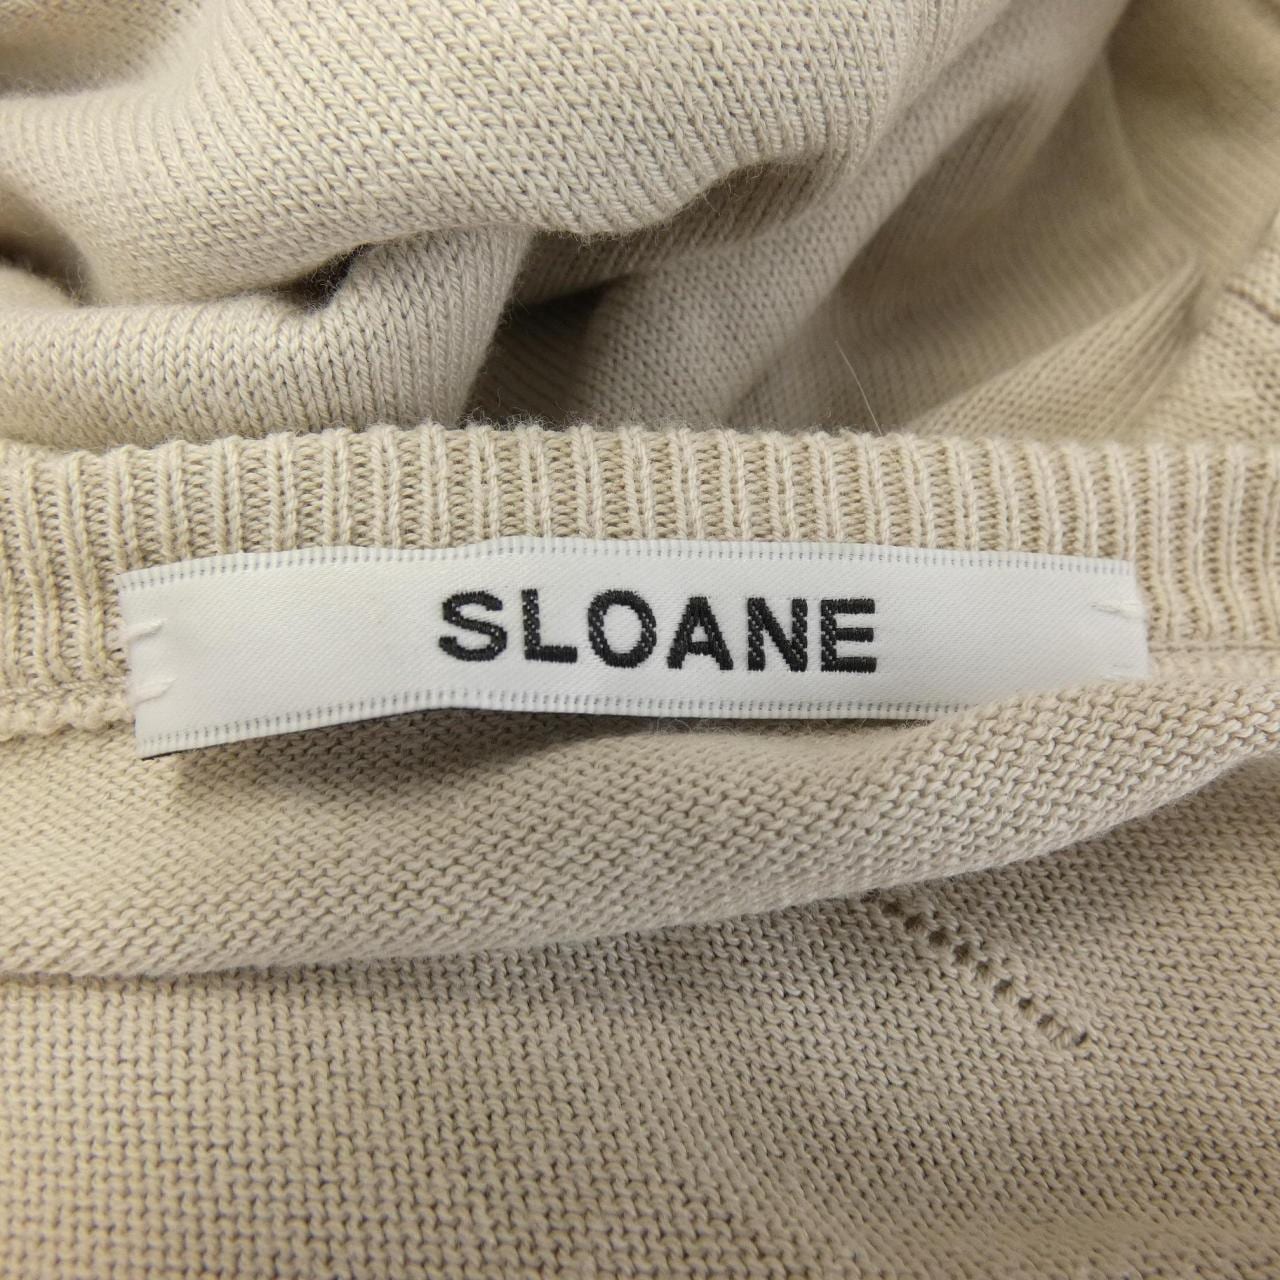 Sloan SLOANE Knit